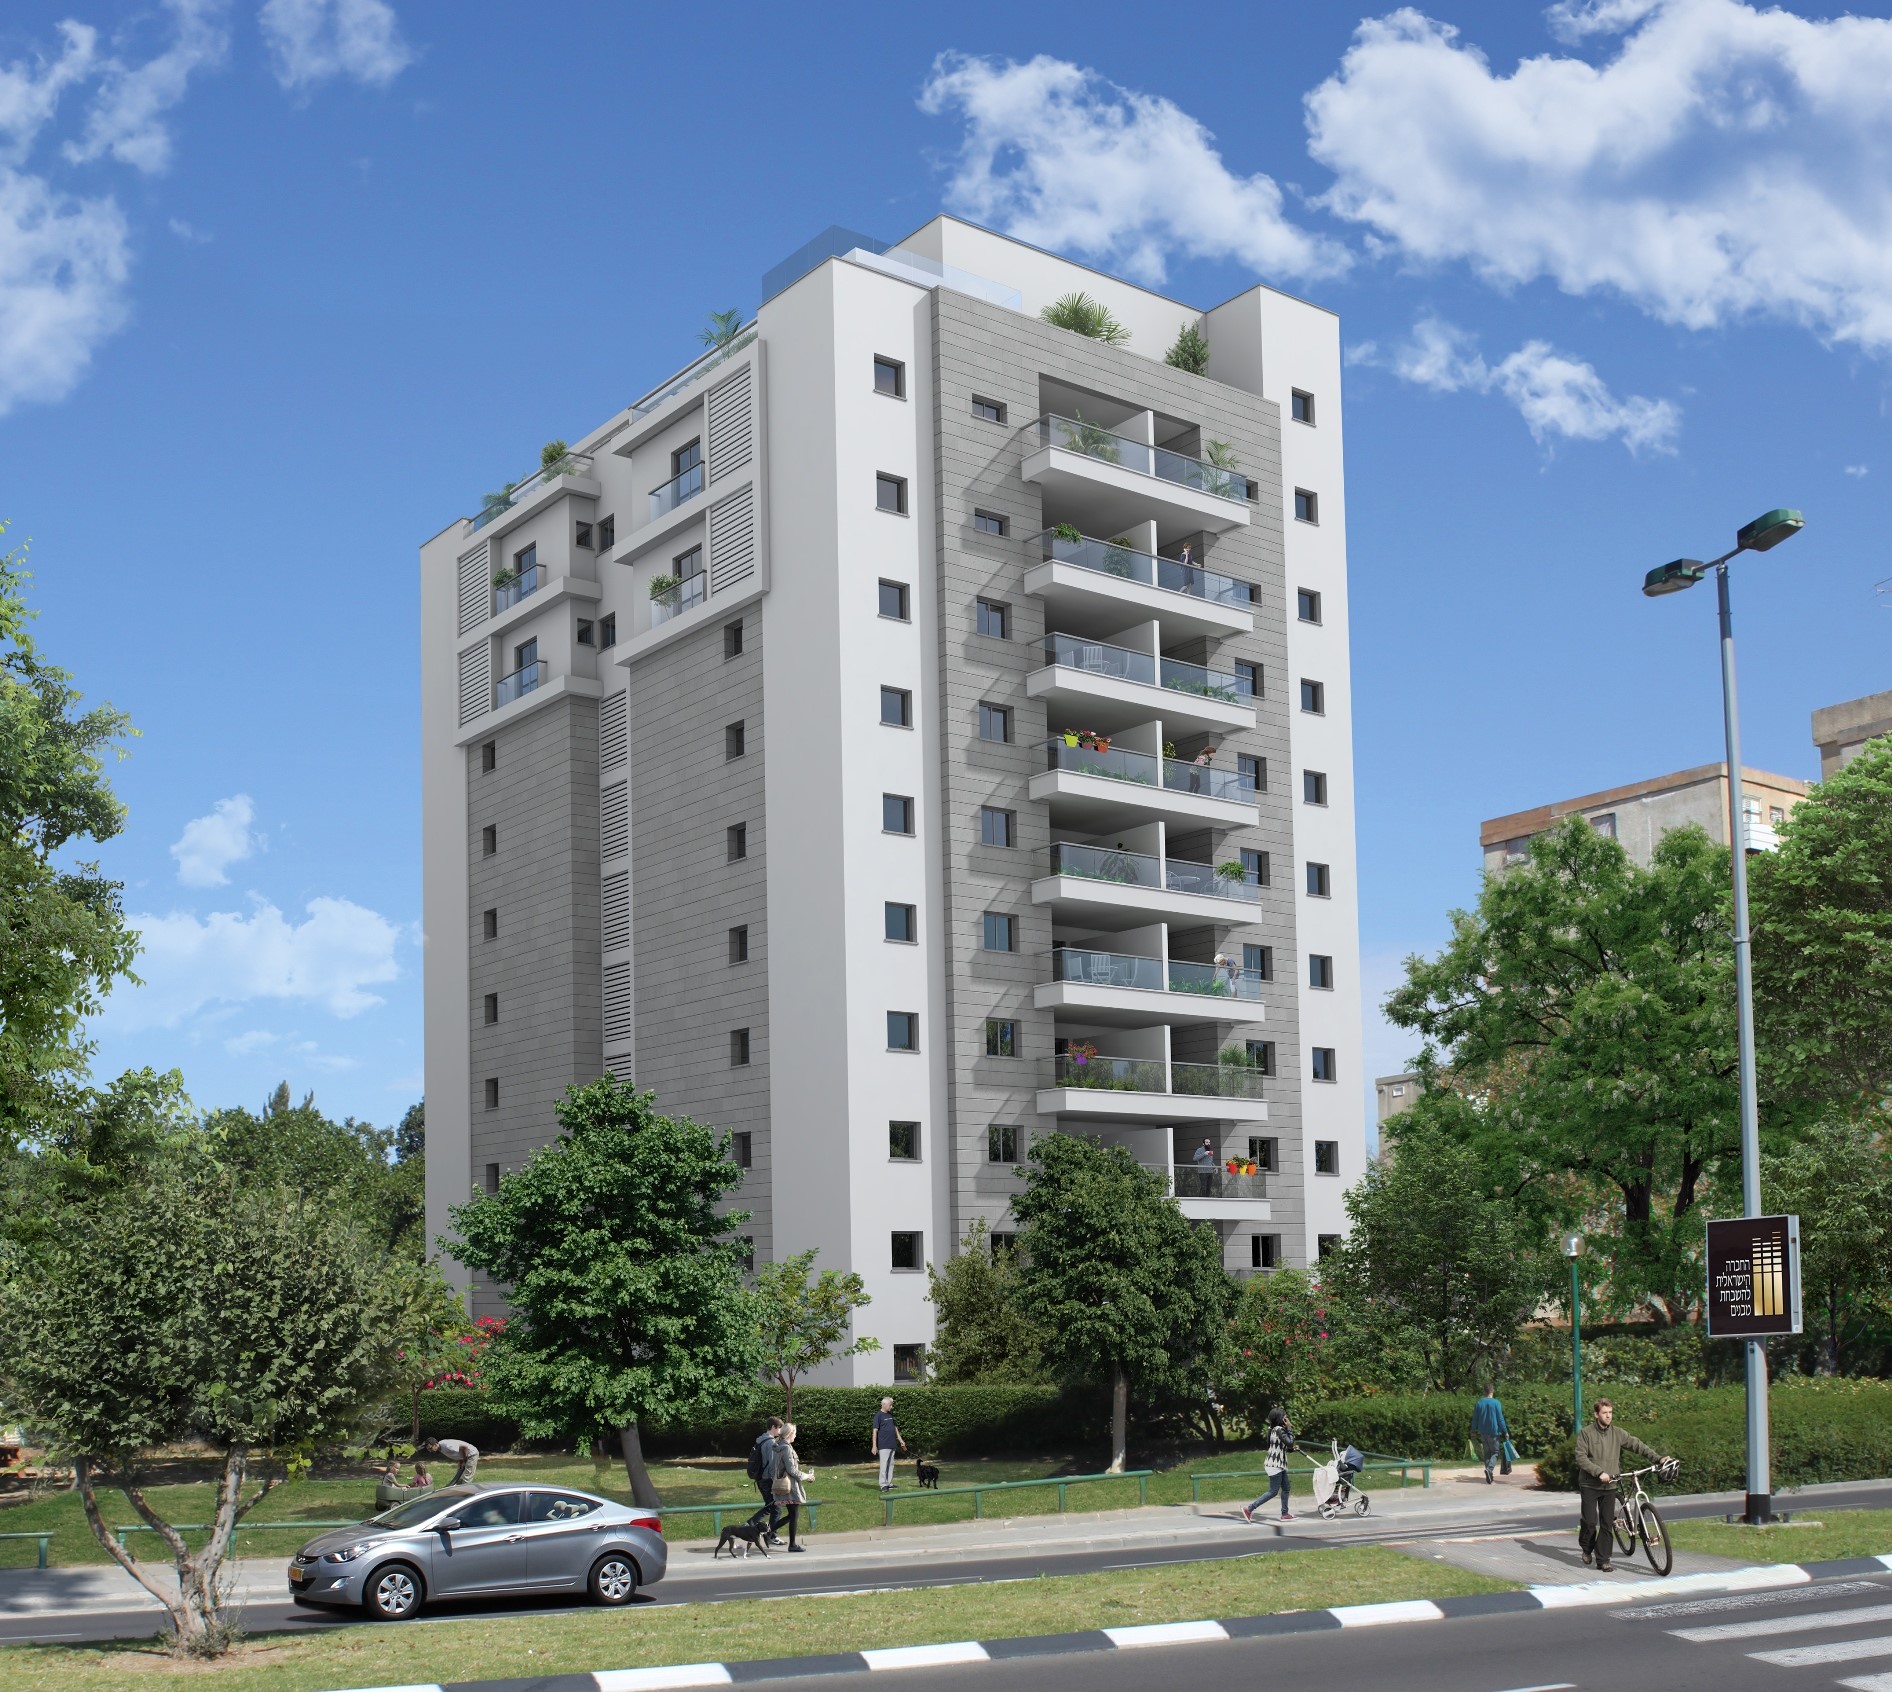 בימים האחרונים החלה מכירת הדירות בחדשות בפרויקט קיציס 2 שבשכונת הדר יוסף